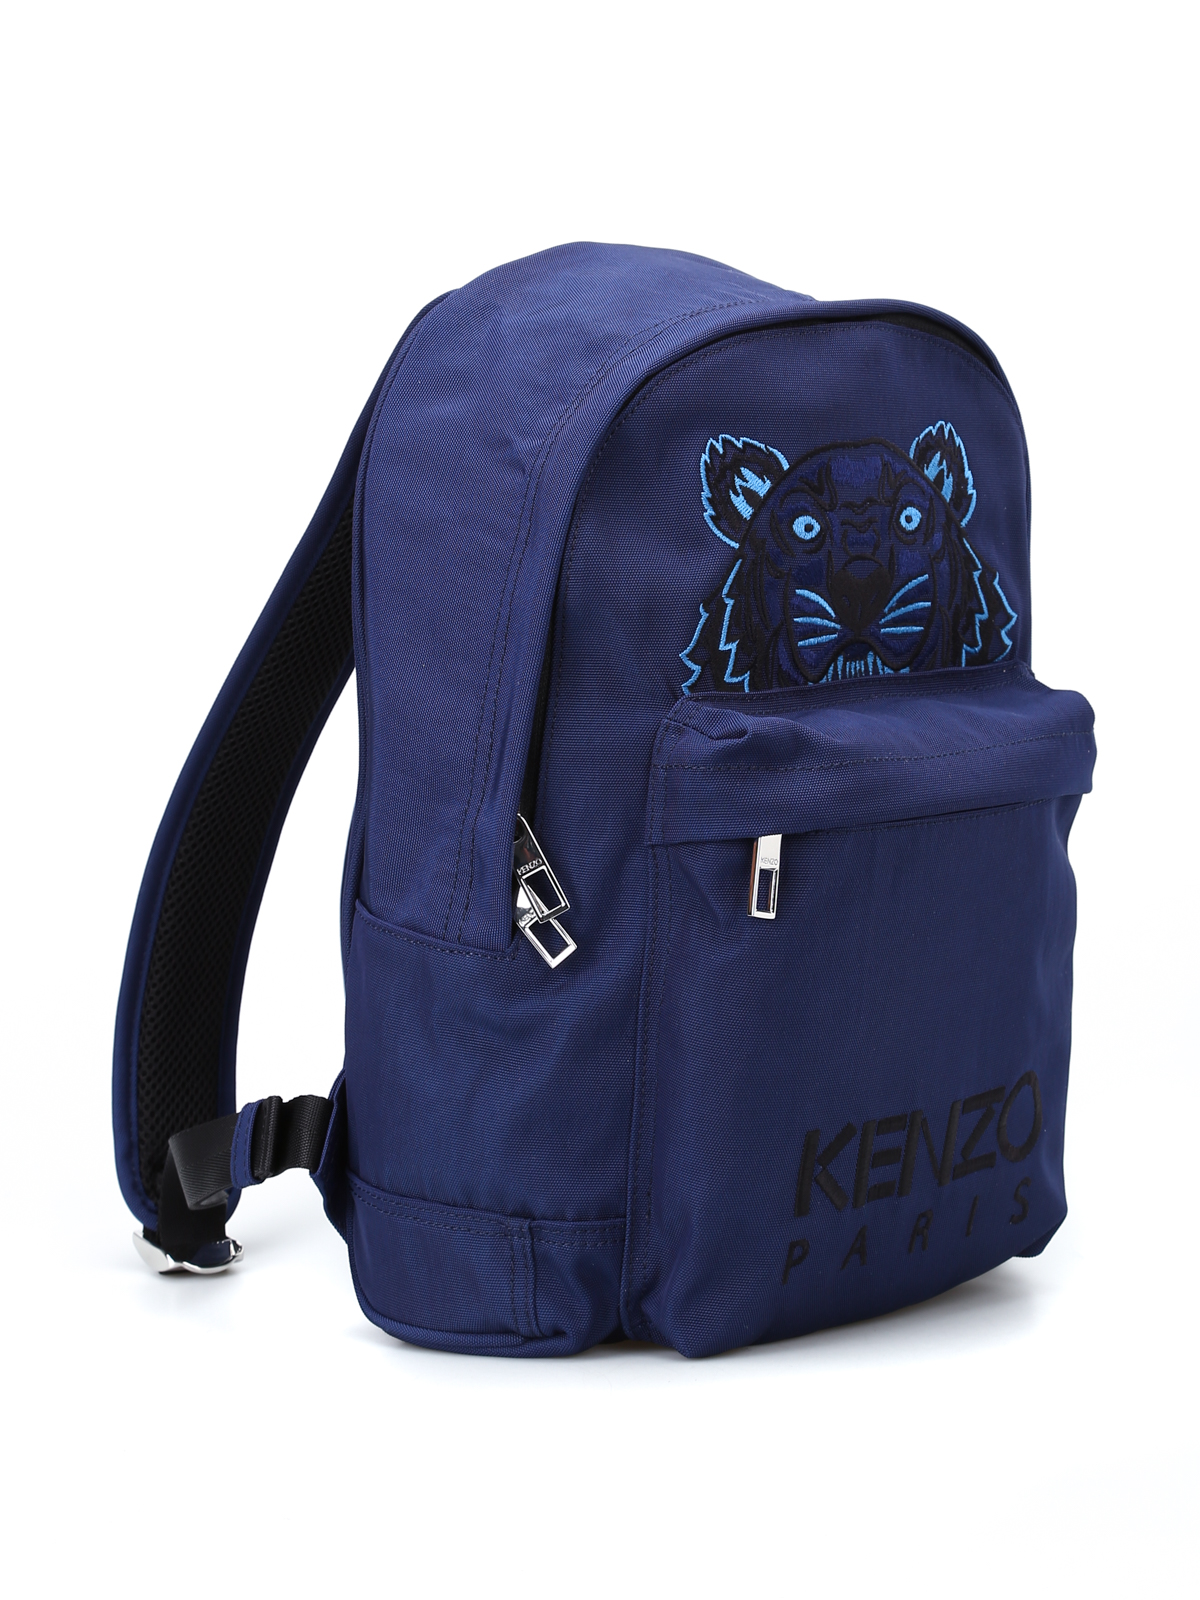 kenzo blue backpack